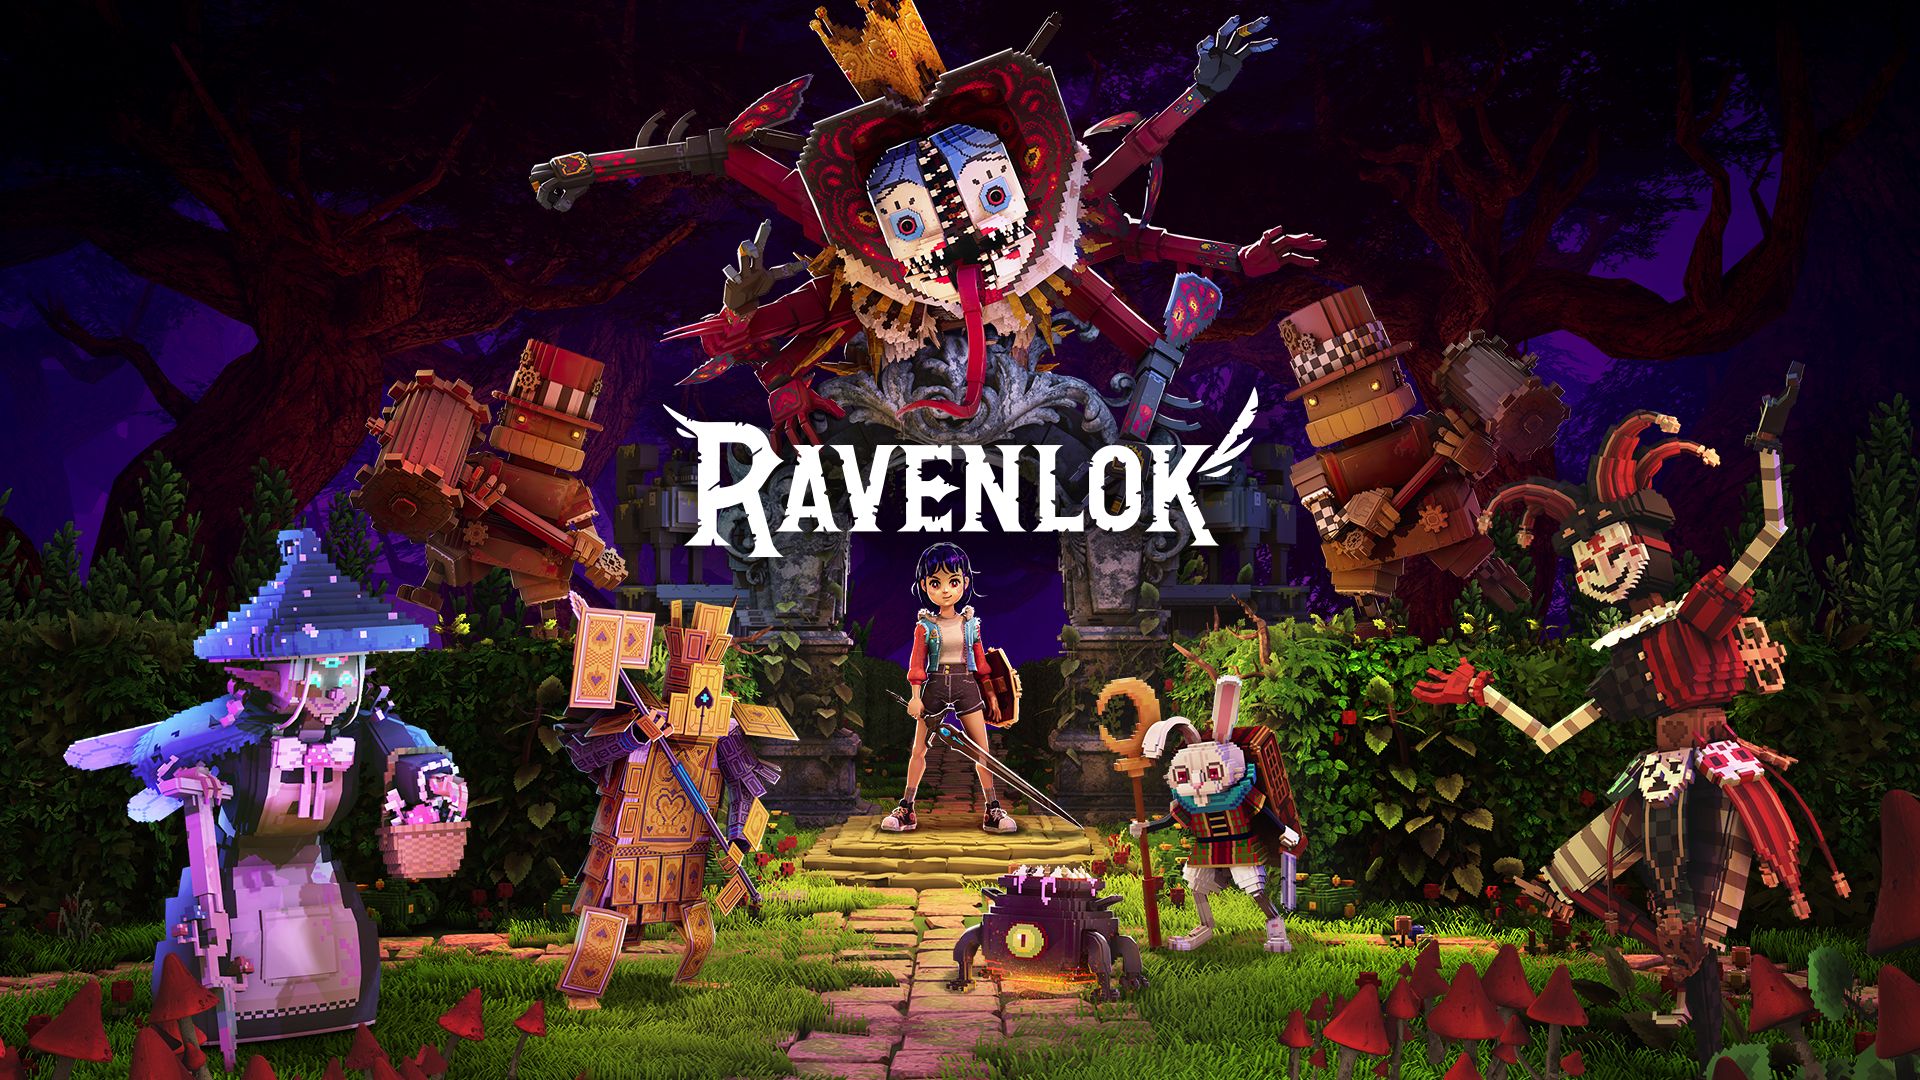 Ravenlock